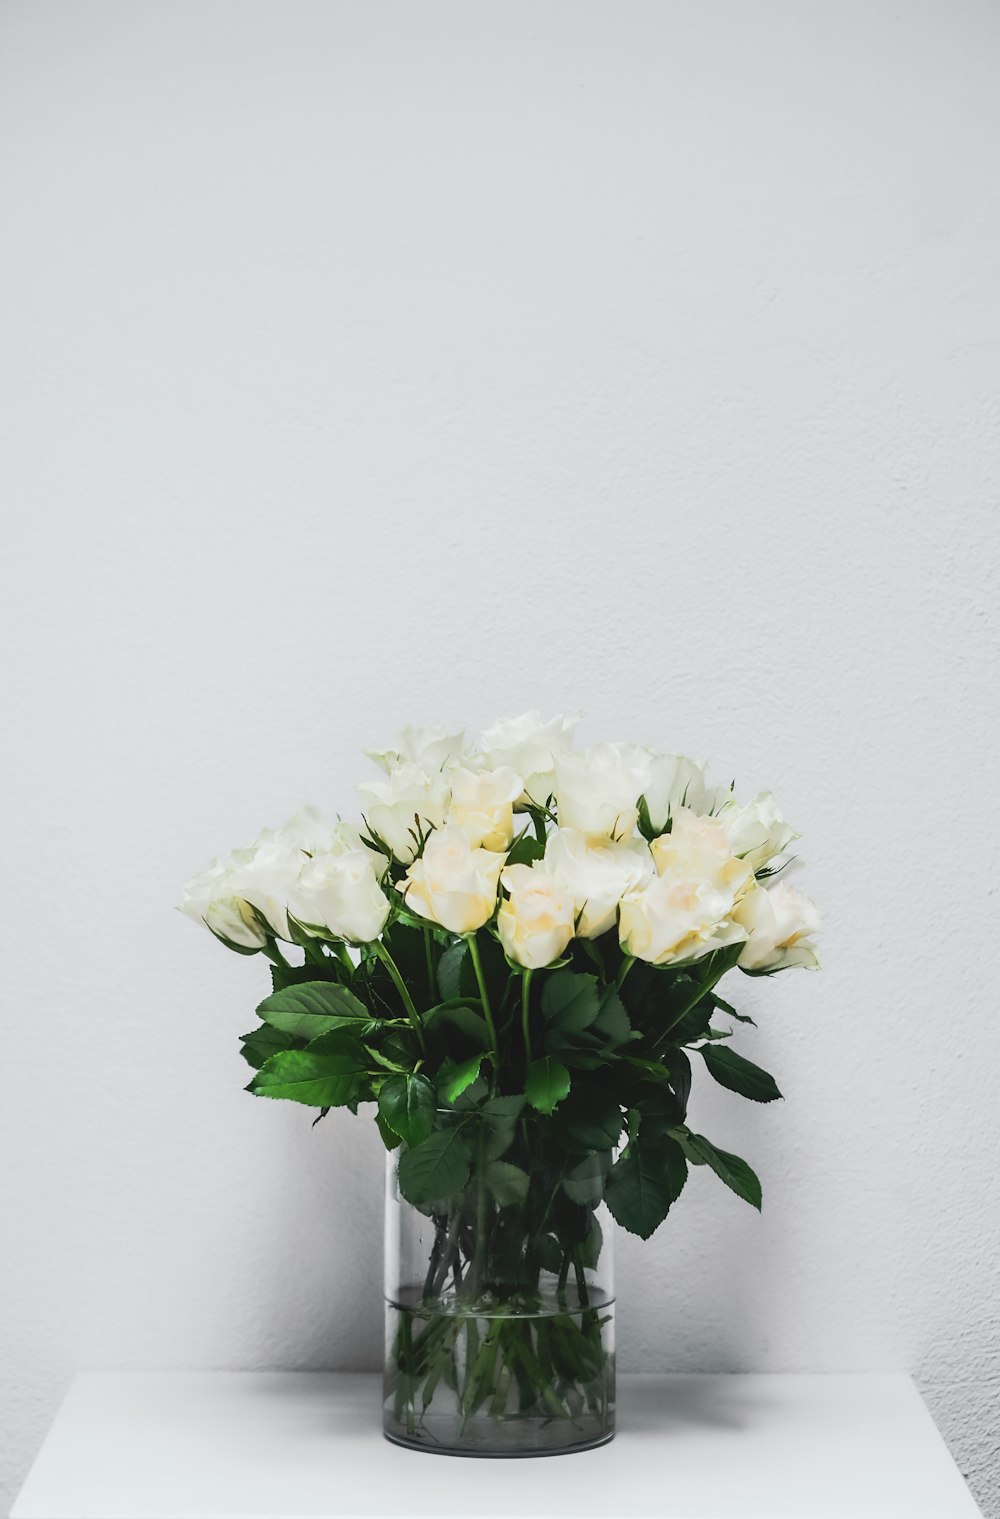 검은 꽃병에 흰 꽃